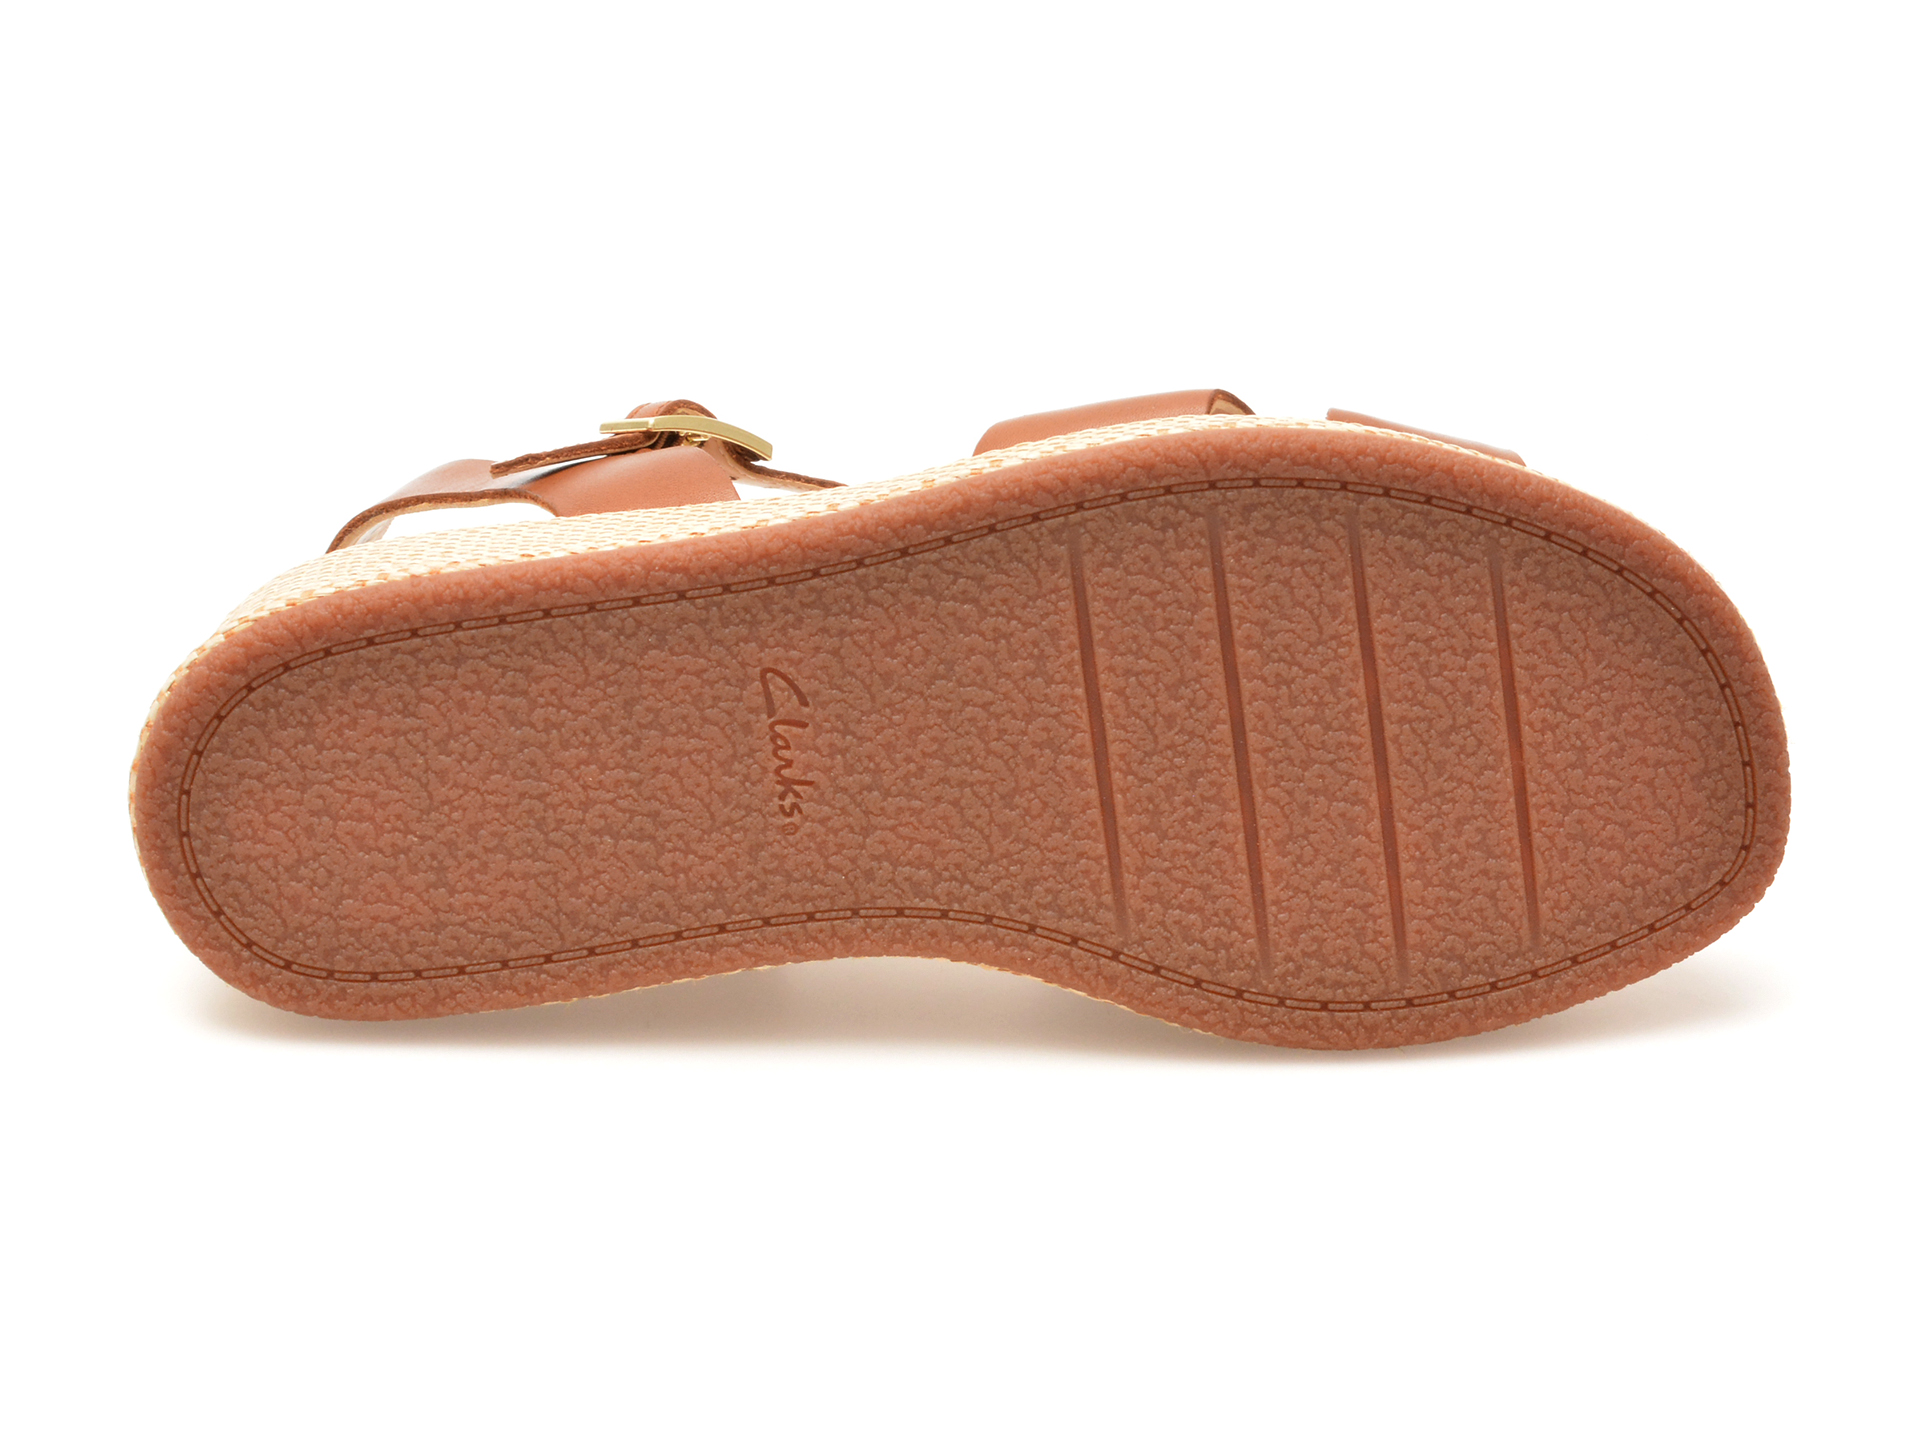 Sandale casual CLARKS maro, KIMMEI TWIST, din piele naturala